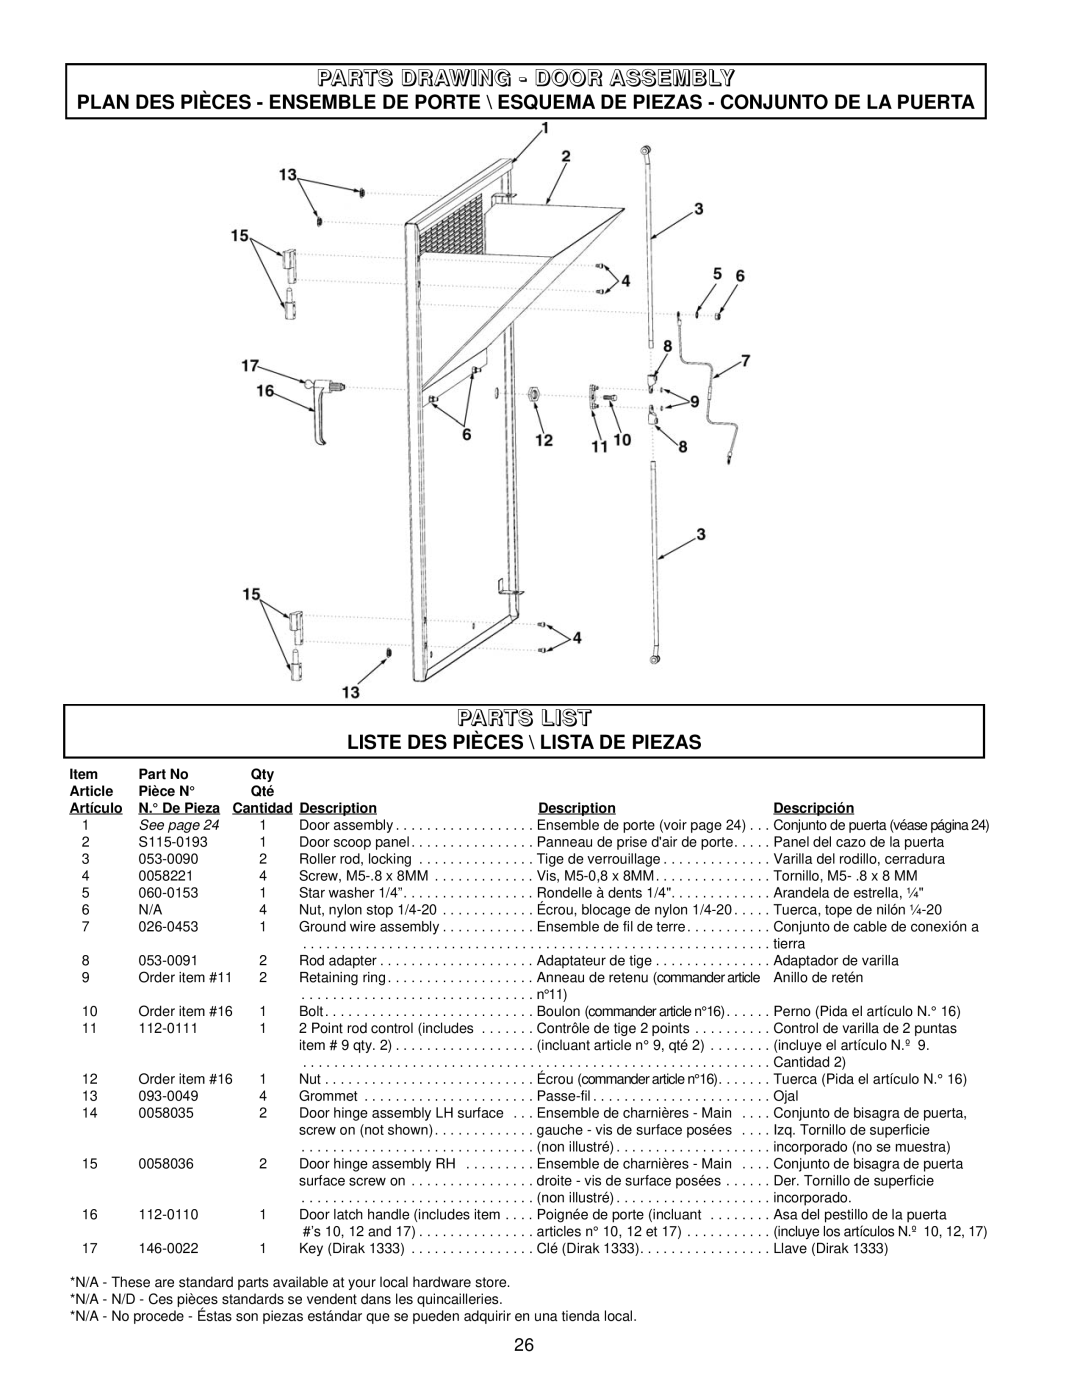 Coleman PM402511 Parts Drawing - Door Assembly, Parts List, Liste Des Pièces \ Lista De Piezas, Article, Pièce N, Artículo 